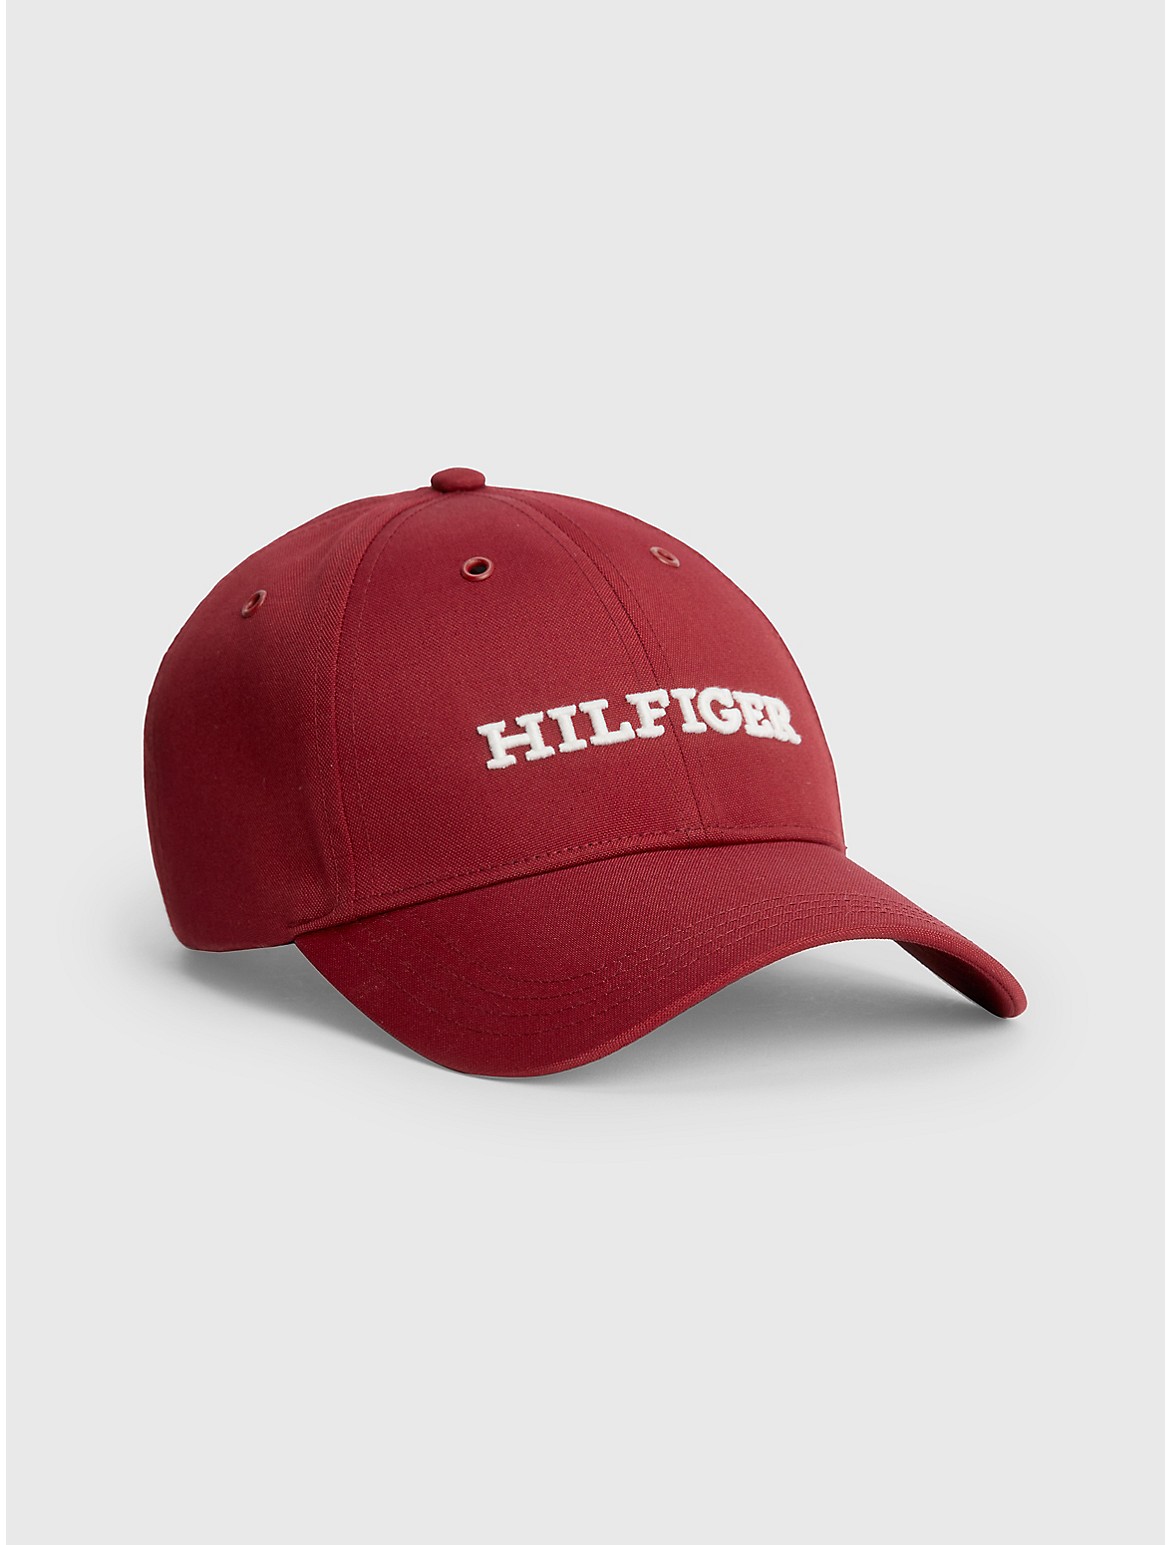 Tommy Hilfiger Men's Hilfiger Baseball Cap - Red